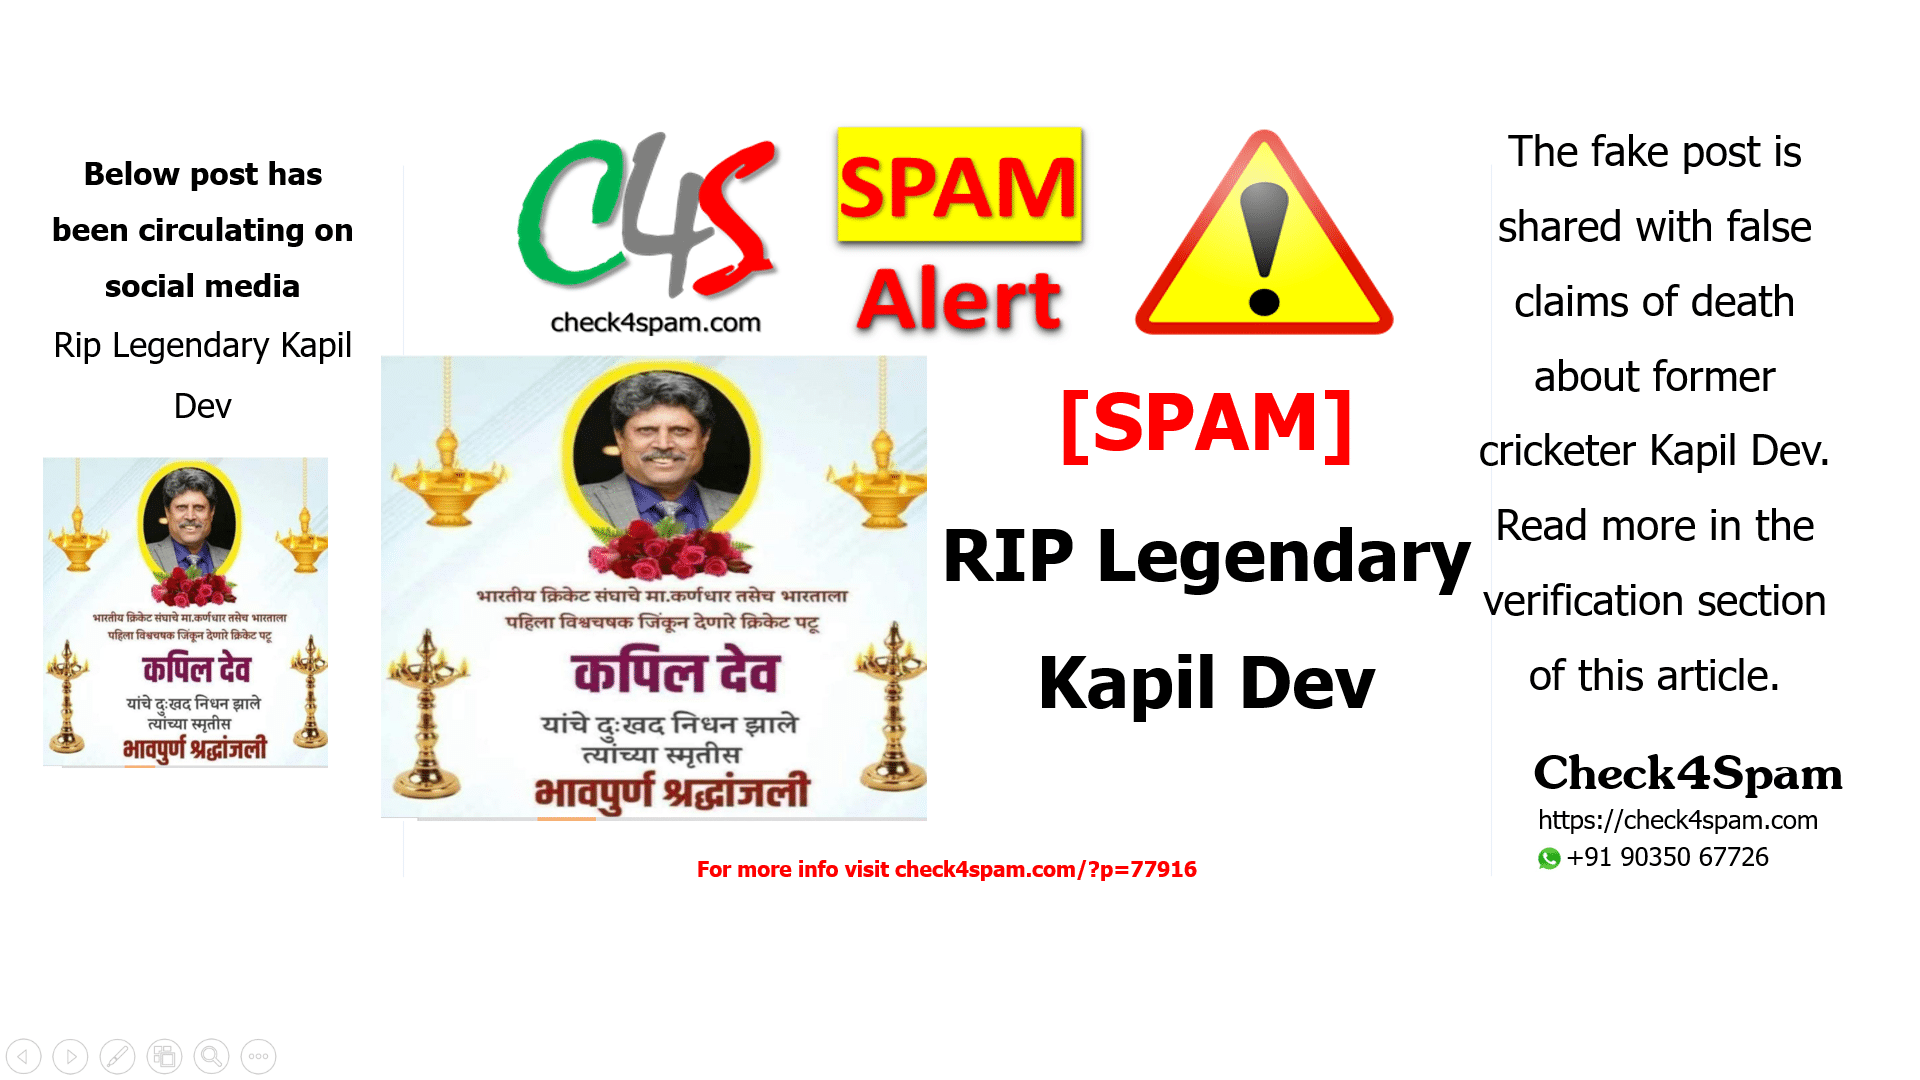 Rip Legendary Kapil Dev